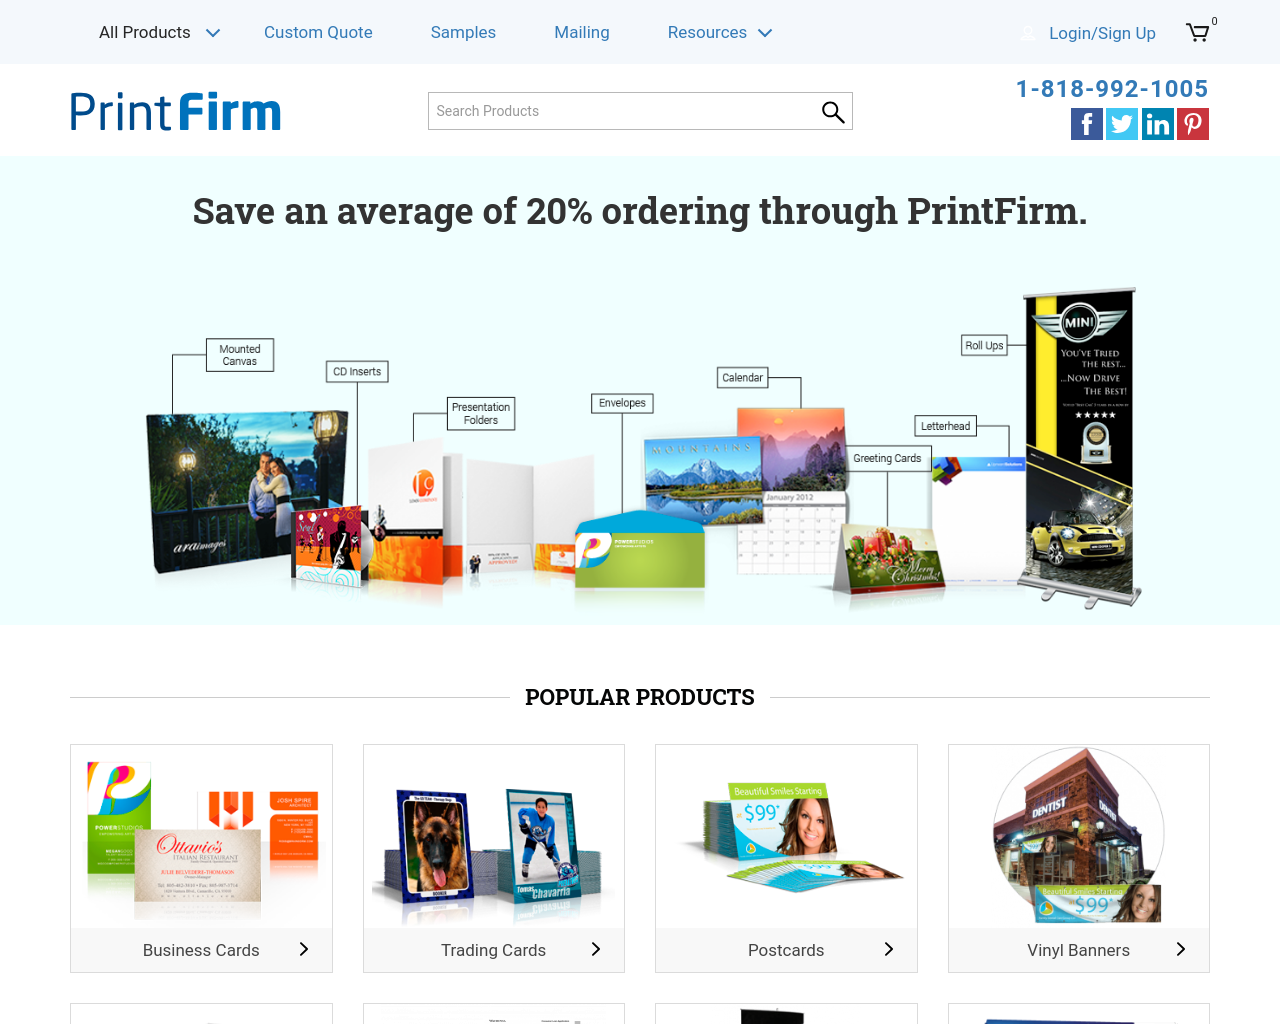 printfirm.com